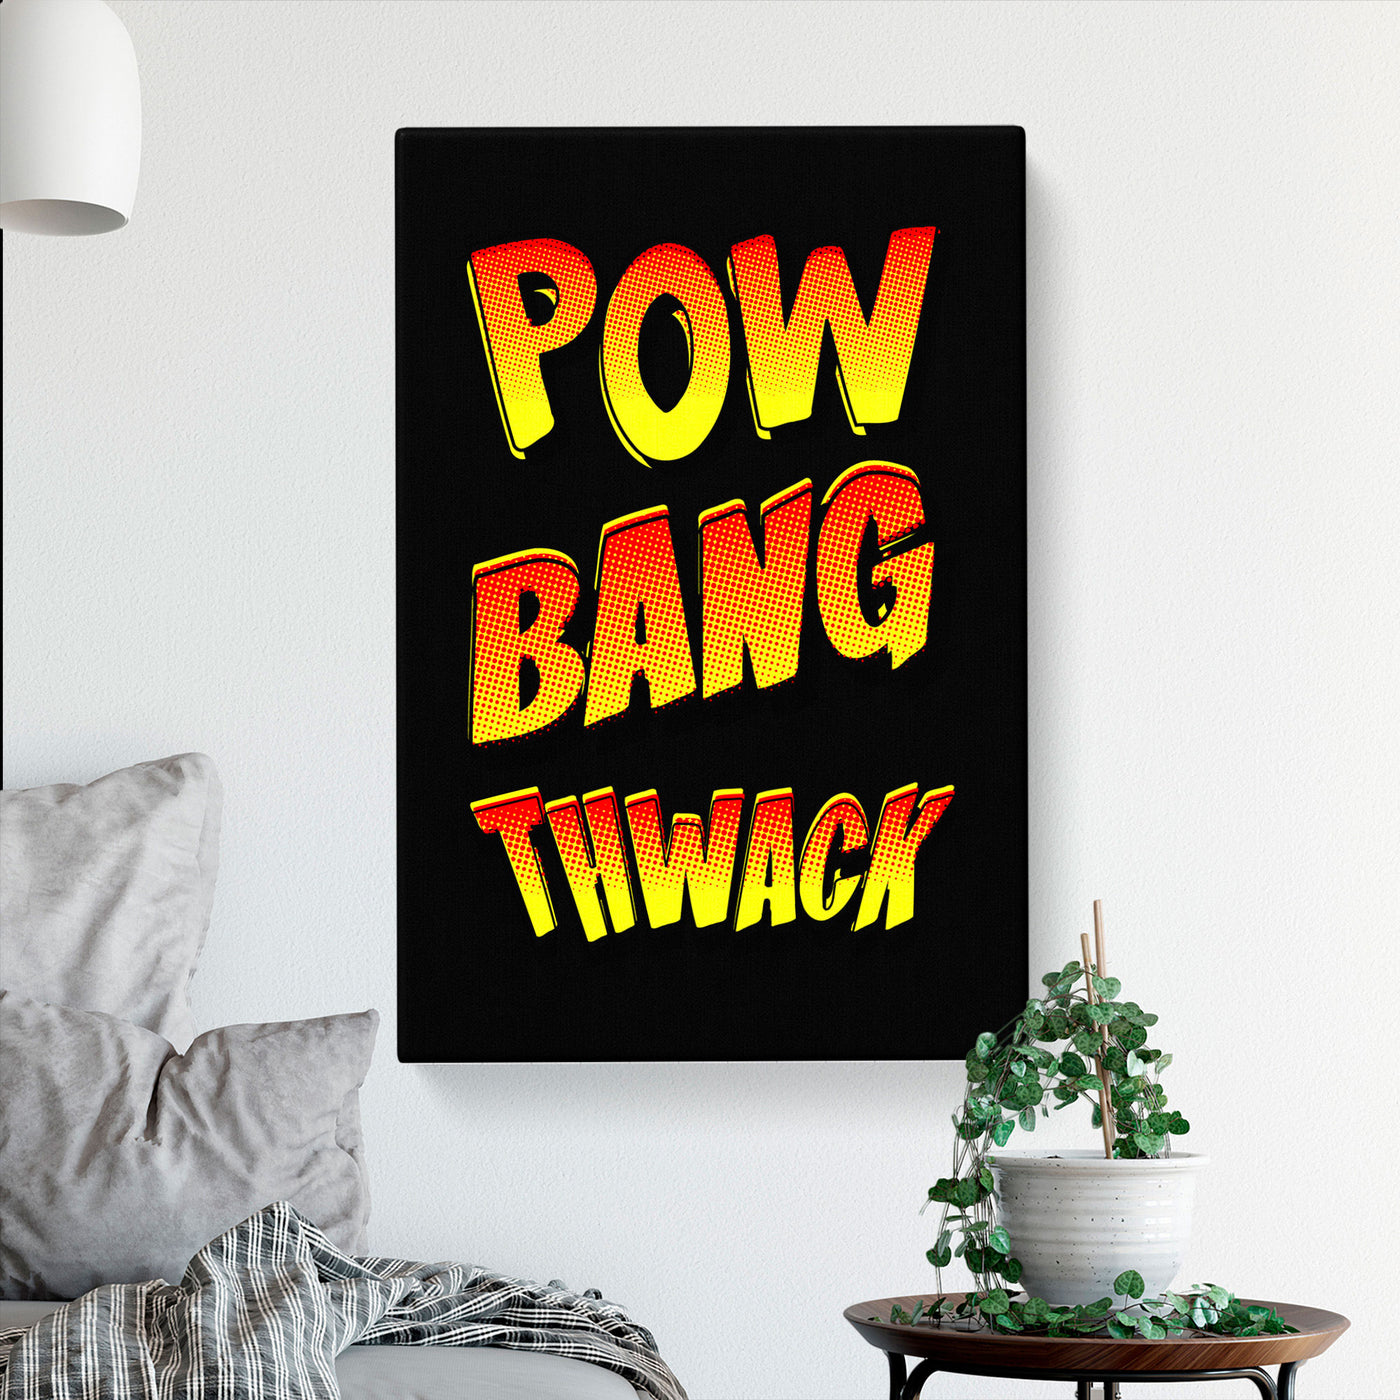 Pow Bang Thwack